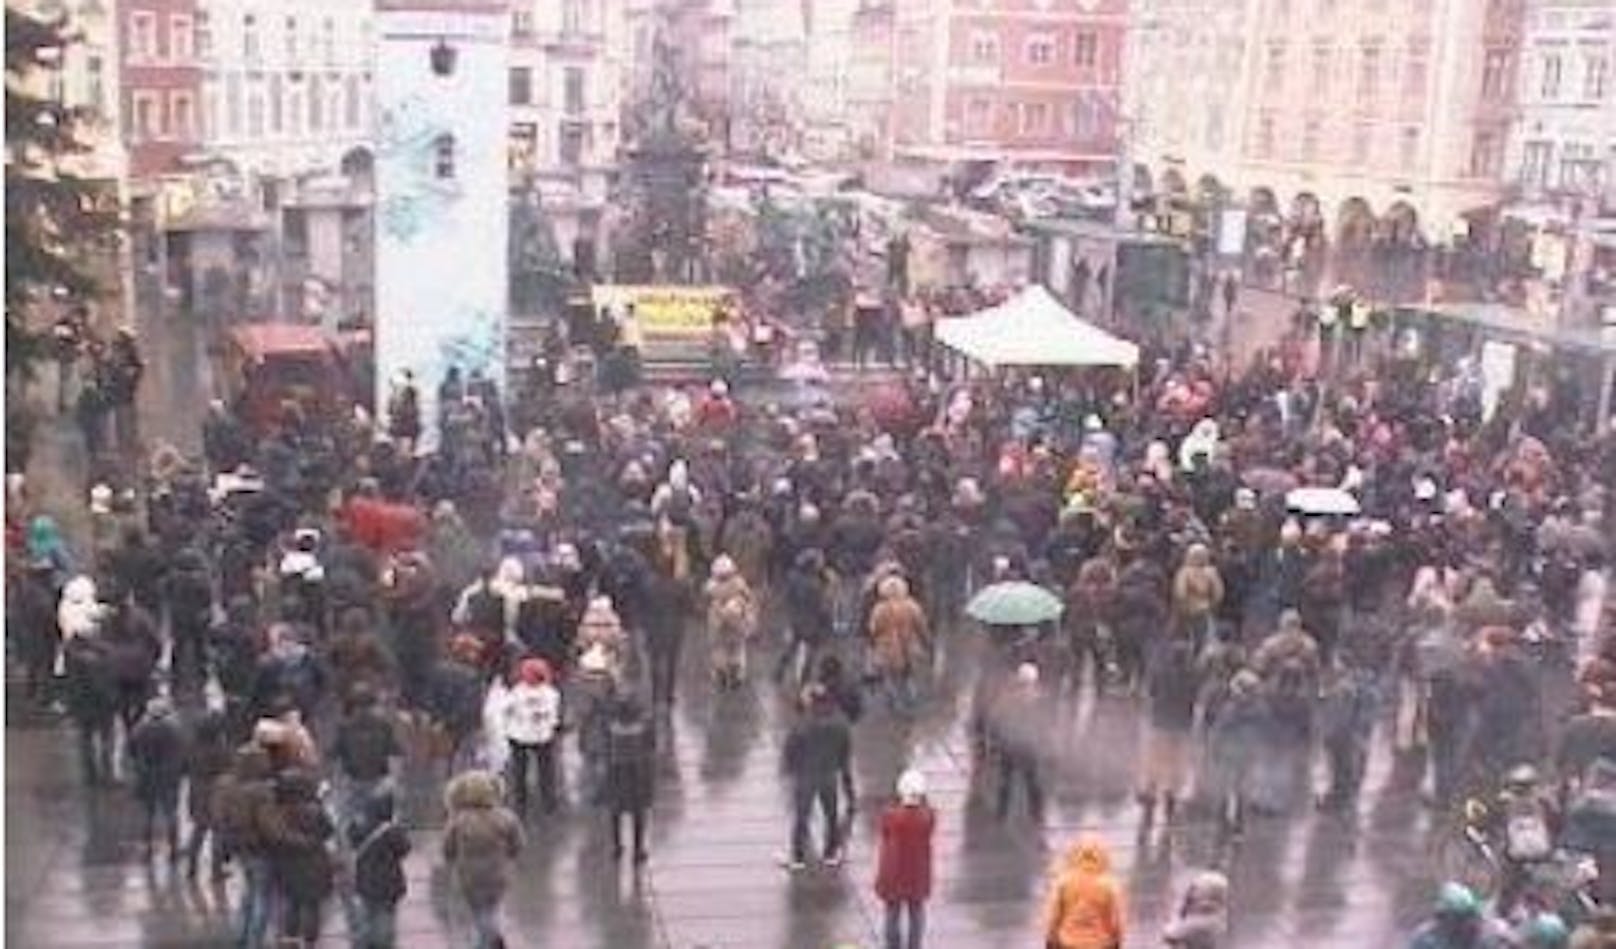 Am Samstag fand in Graz eine Demonstration gegen die Corona-Maßnahmen statt.